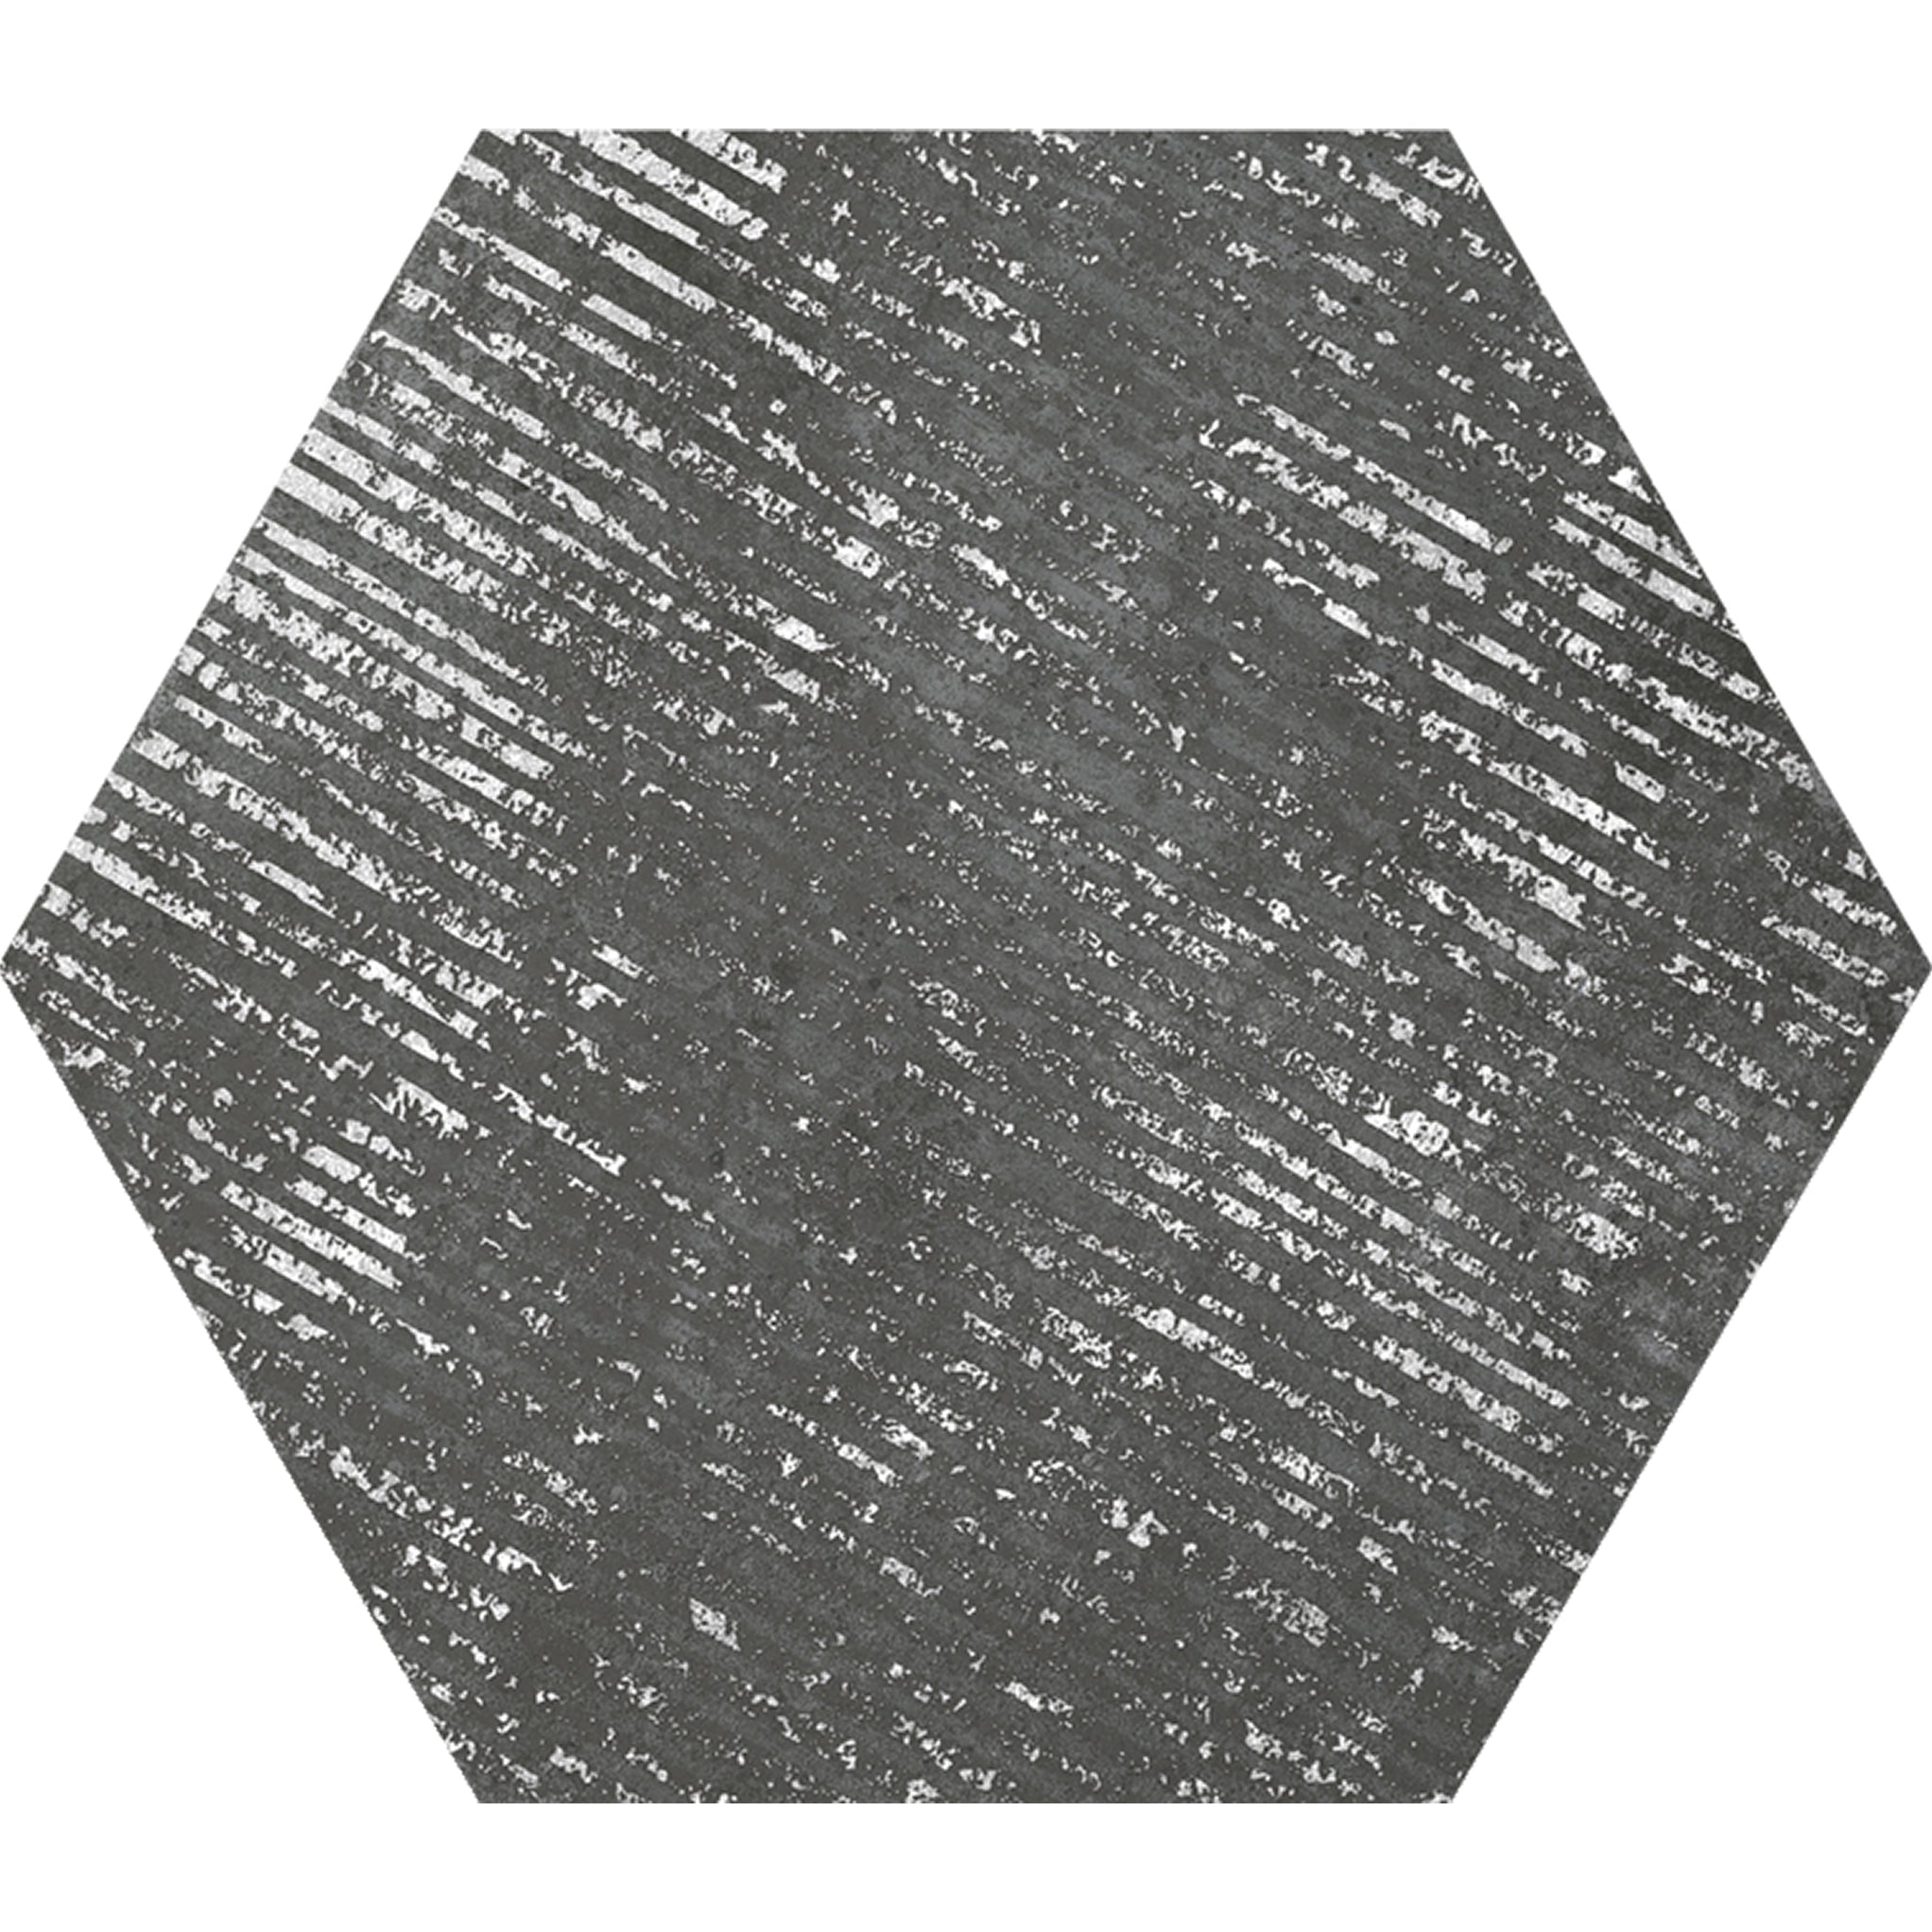 Ink Black Dimension Porcelain Hexagon Tile Sample